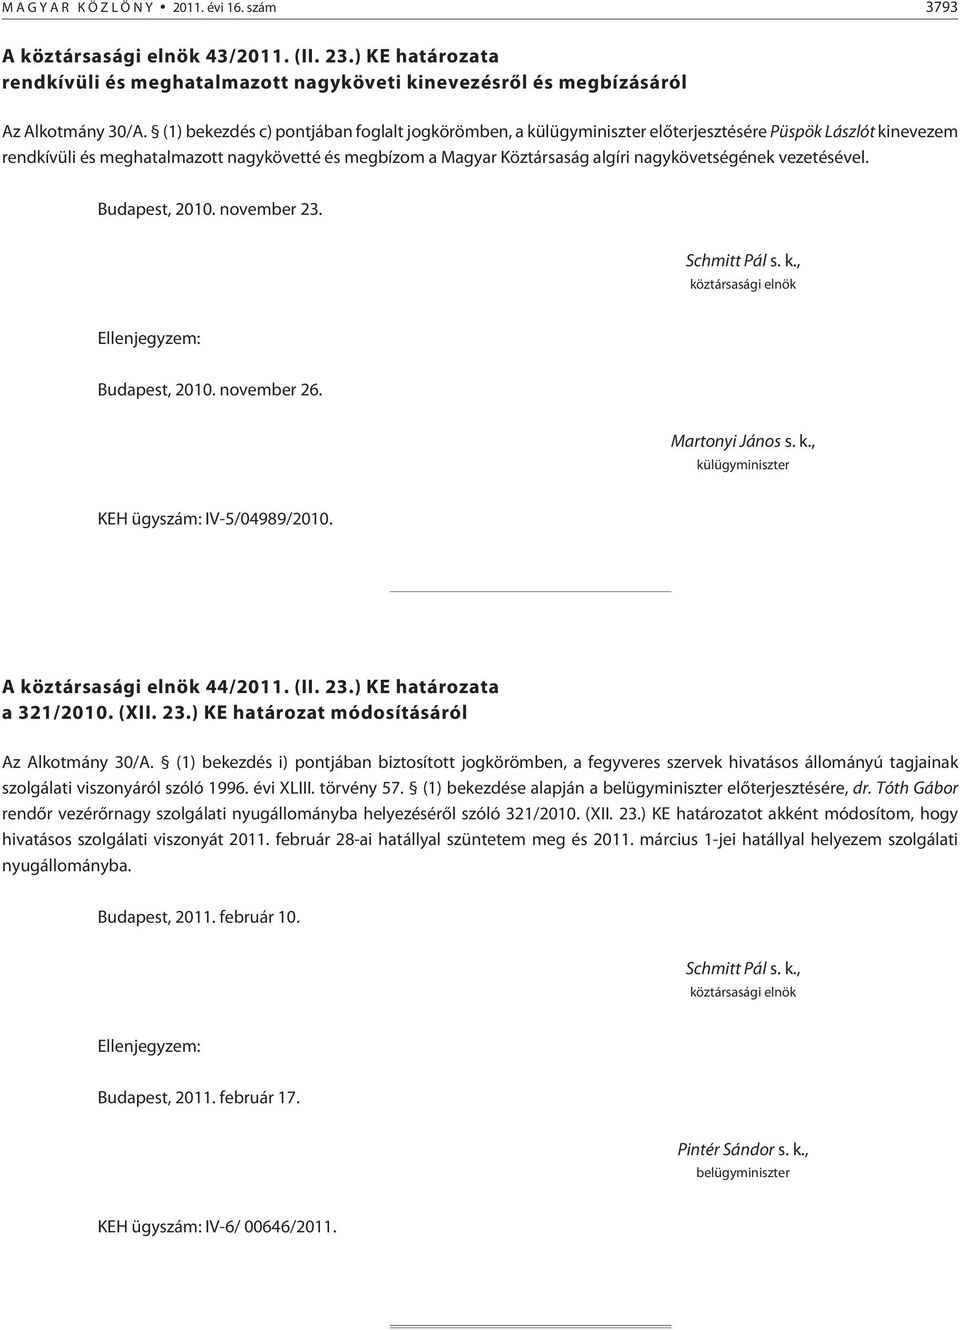 vezetésével. Budapest, 2010. november 23. Budapest, 2010. november 26. KEH ügyszám: IV-5/04989/2010. A 44/2011. (II. 23.) KE a a 321/2010. (XII. 23.) KE módosításáról Az Alkotmány 30/A.